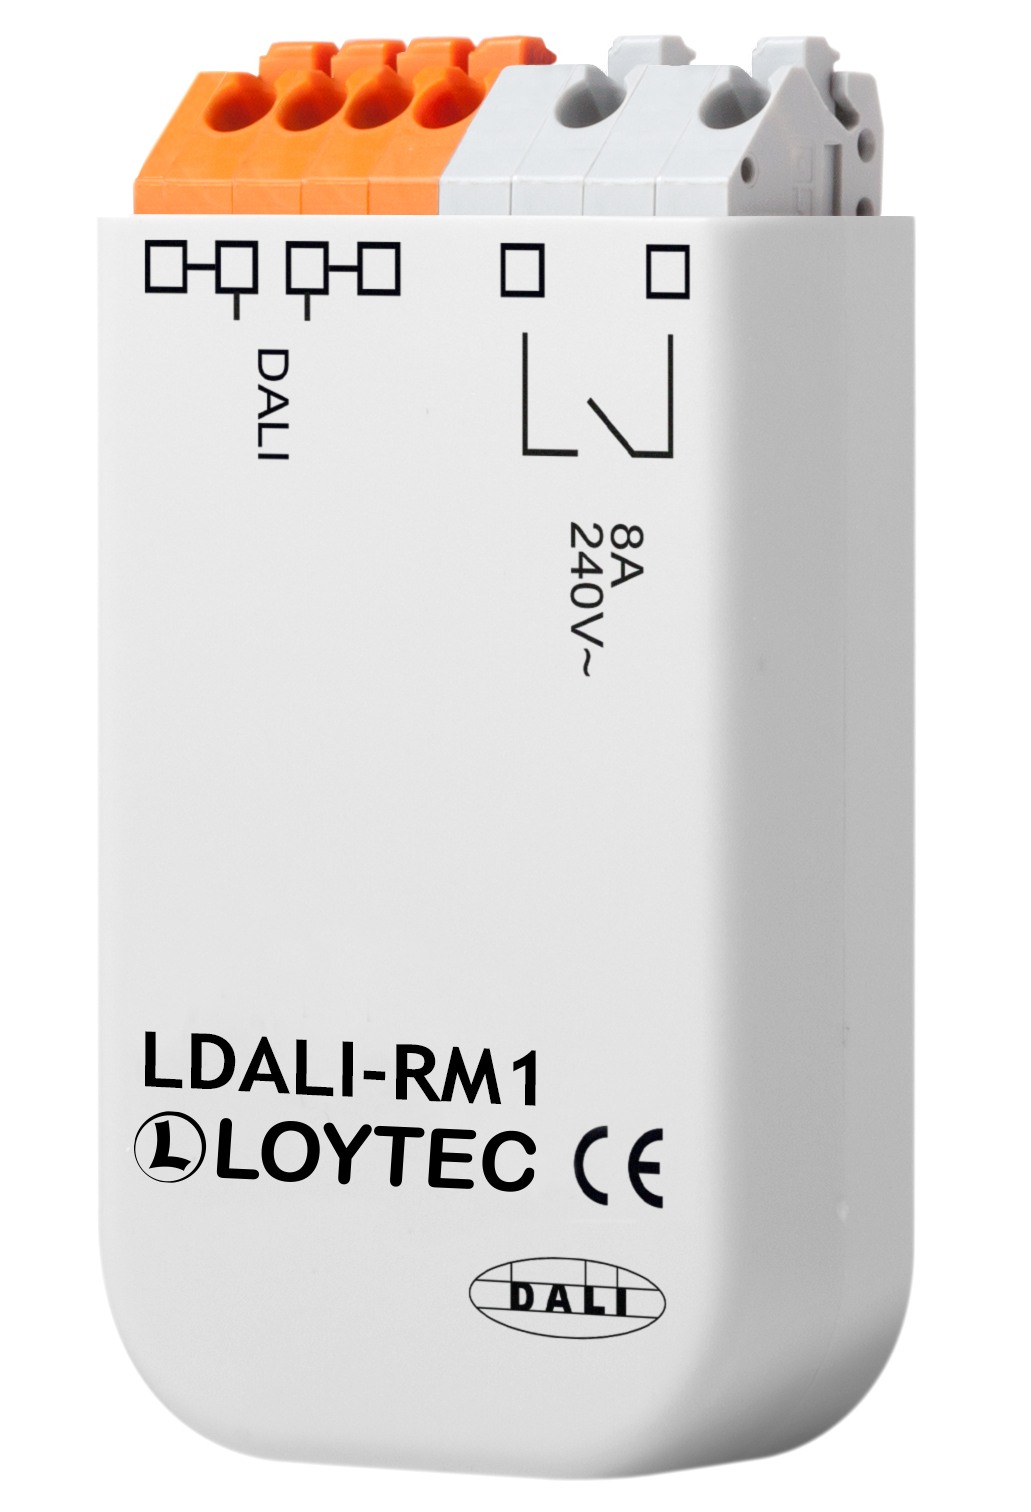 Loytec LDALI-RM1